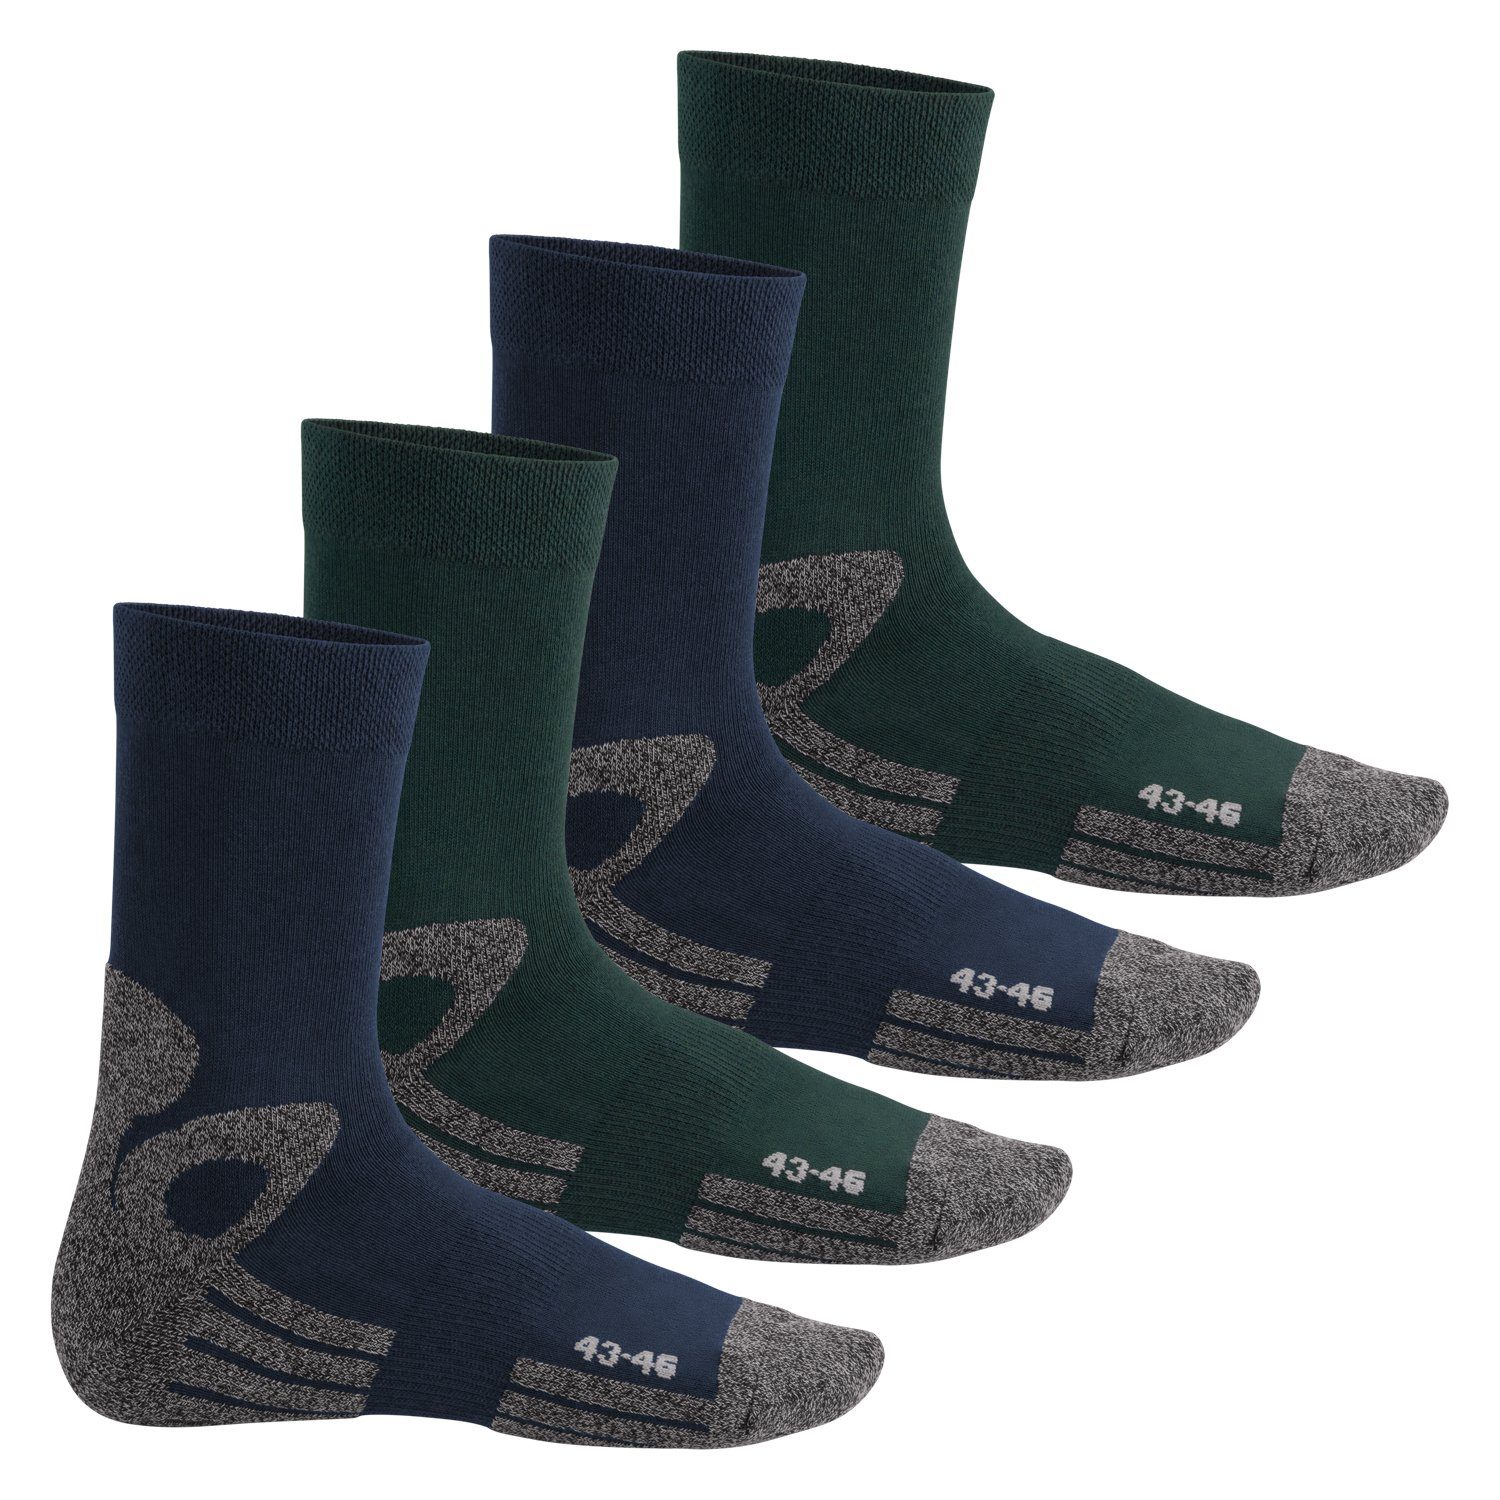 für Herren & Arbeitssocken mit Paar) Frotteesohle Damen Trekking-Socken Blau-Grün (4 celodoro